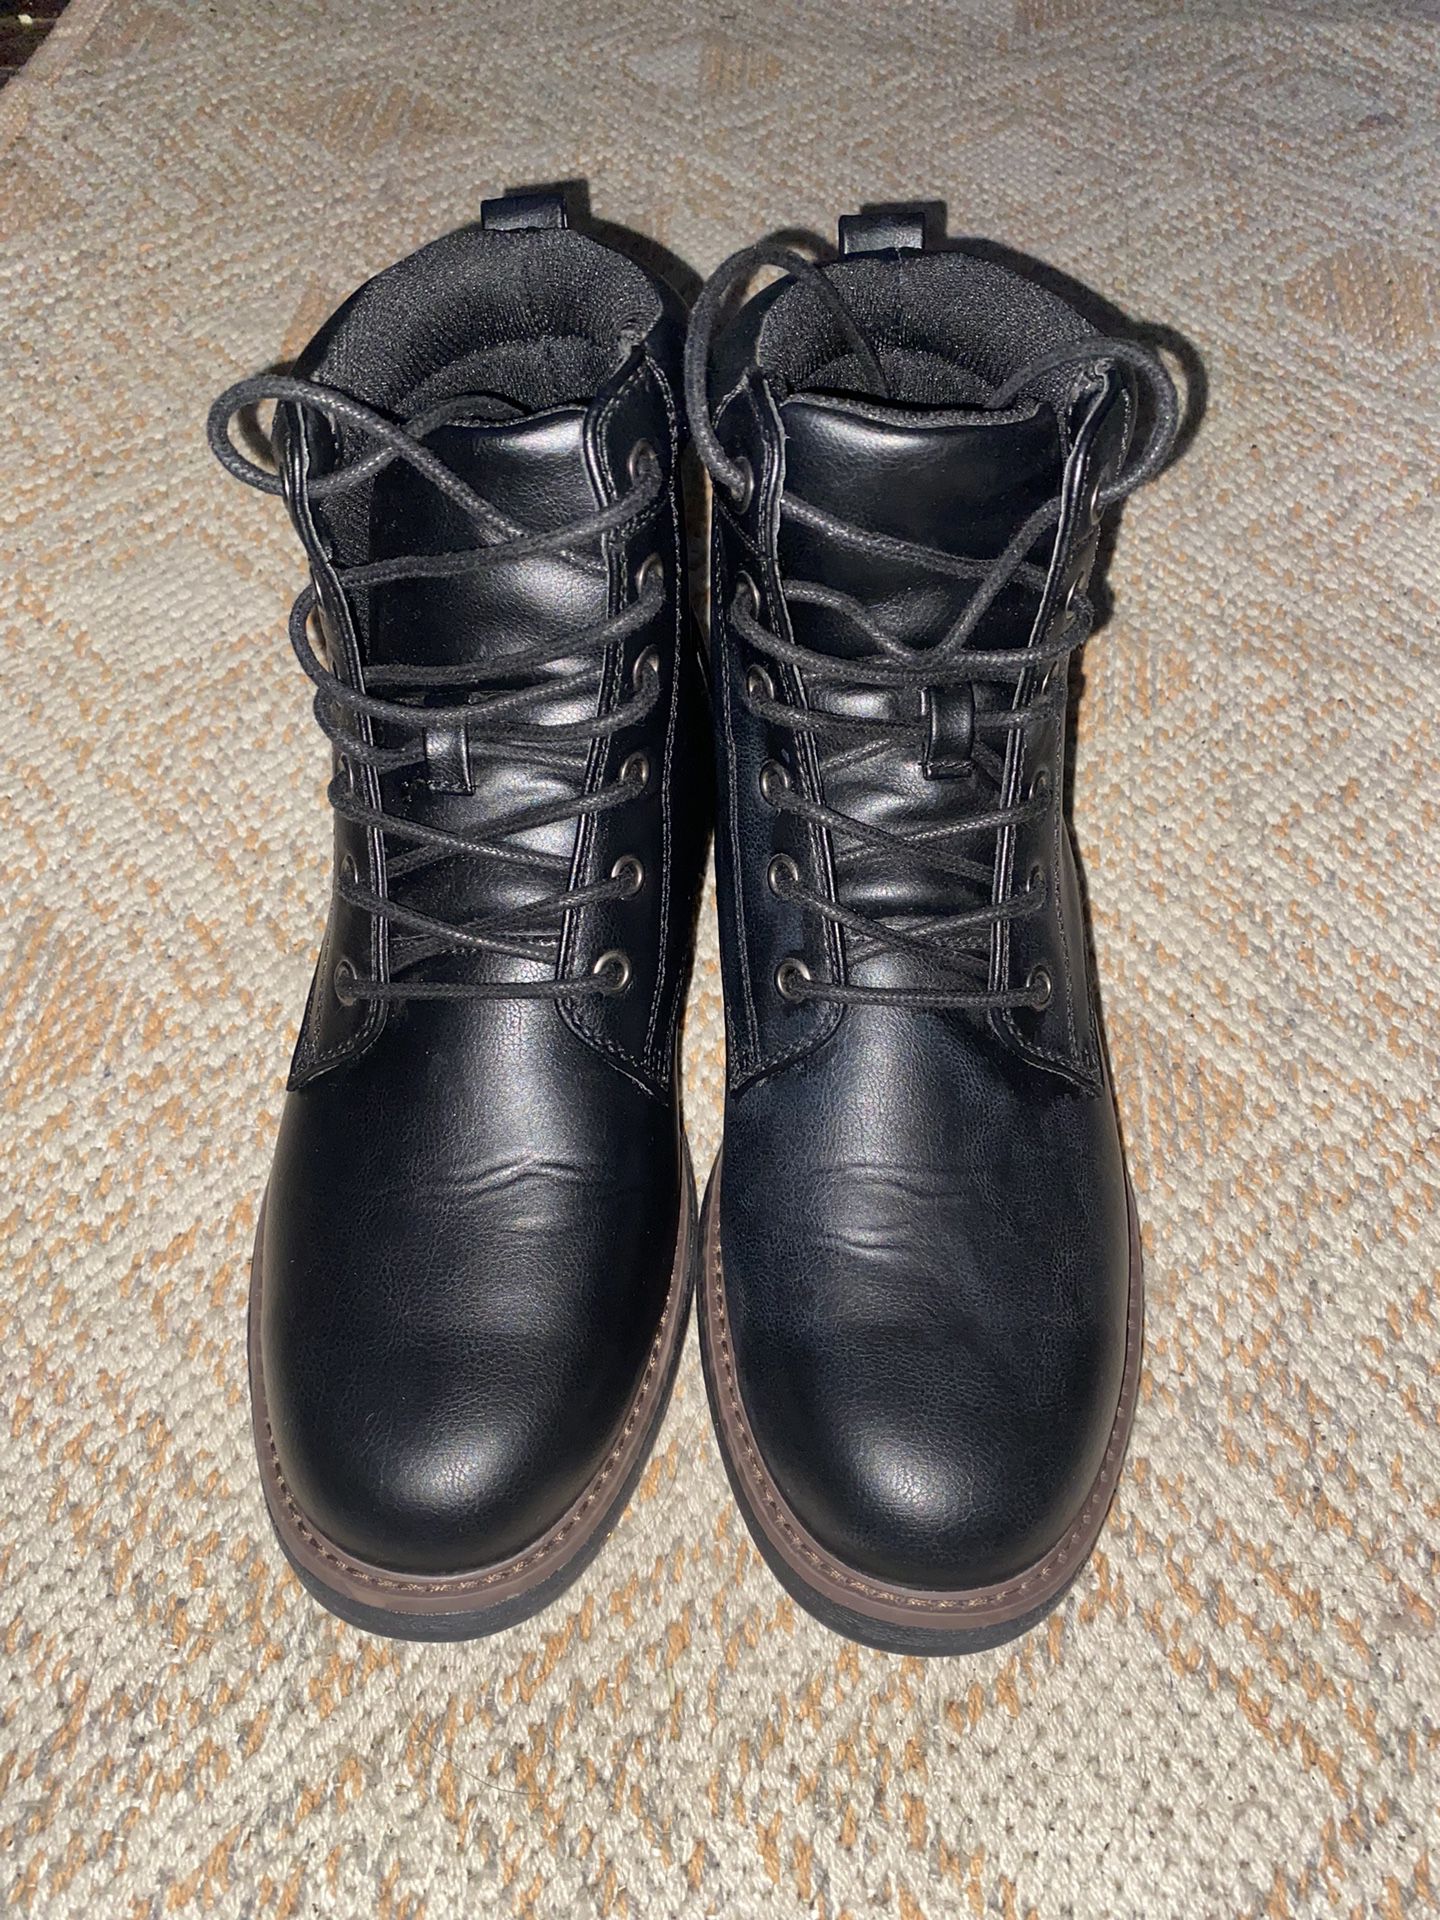 Jeffrey Combat boots